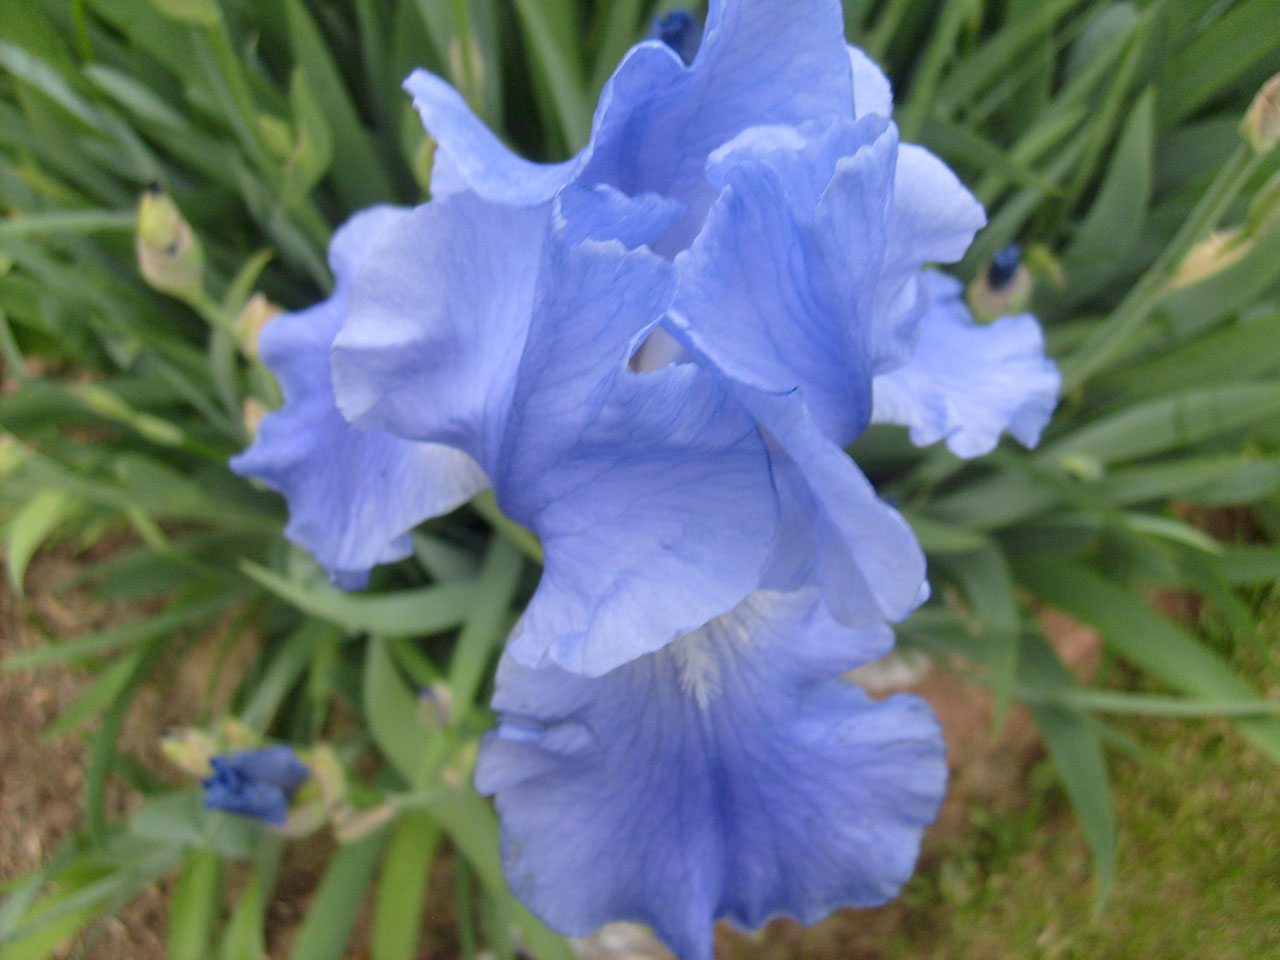 Bleu iris